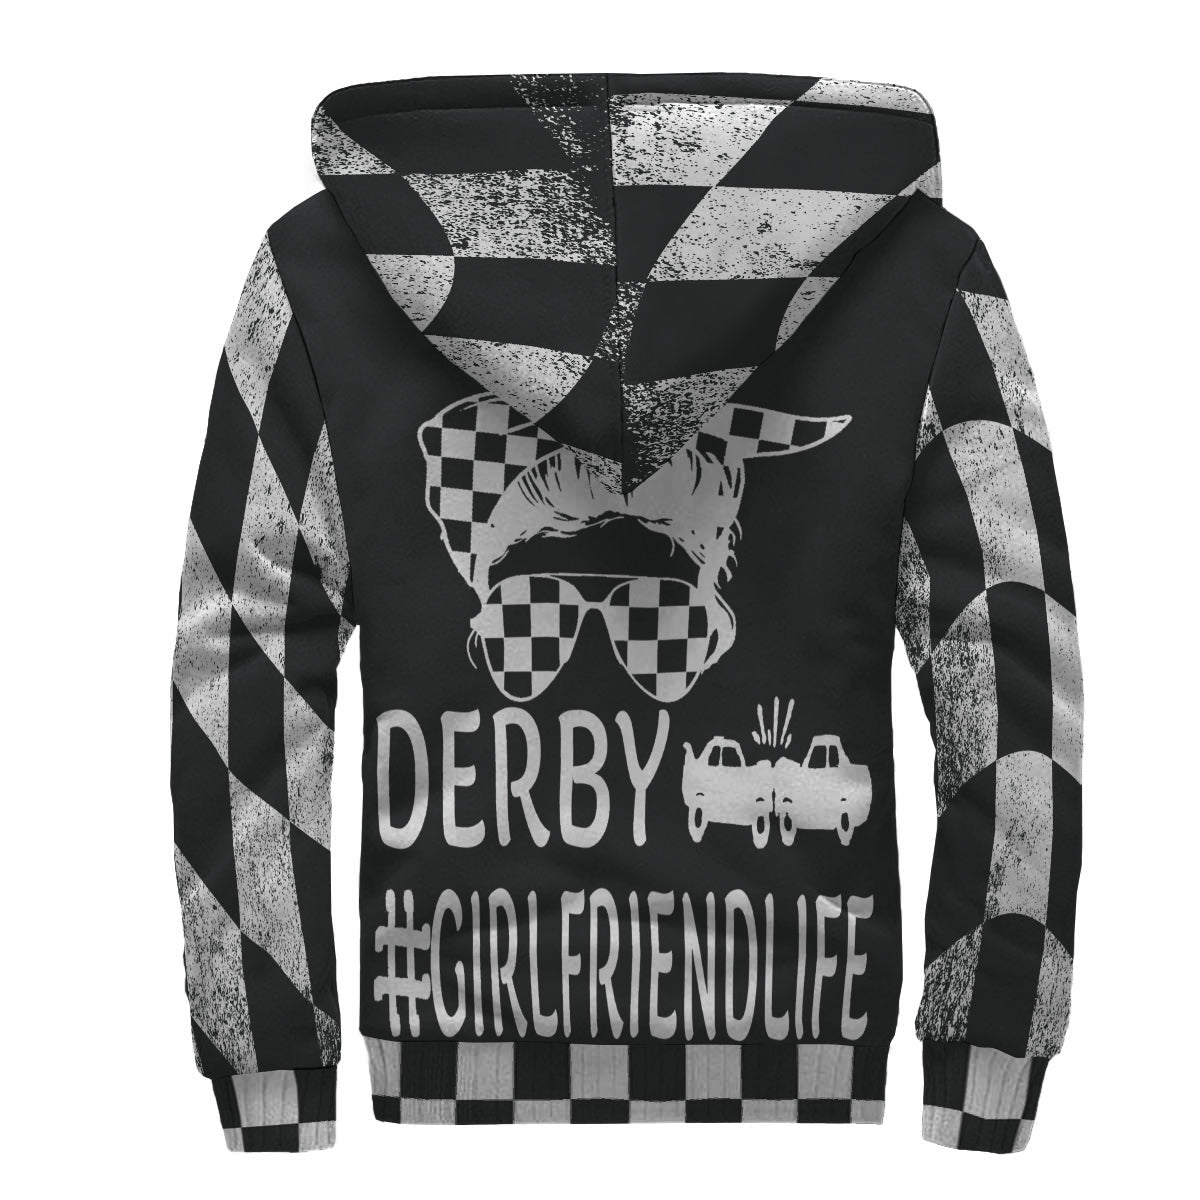 Demolition derby girlfriend jacket